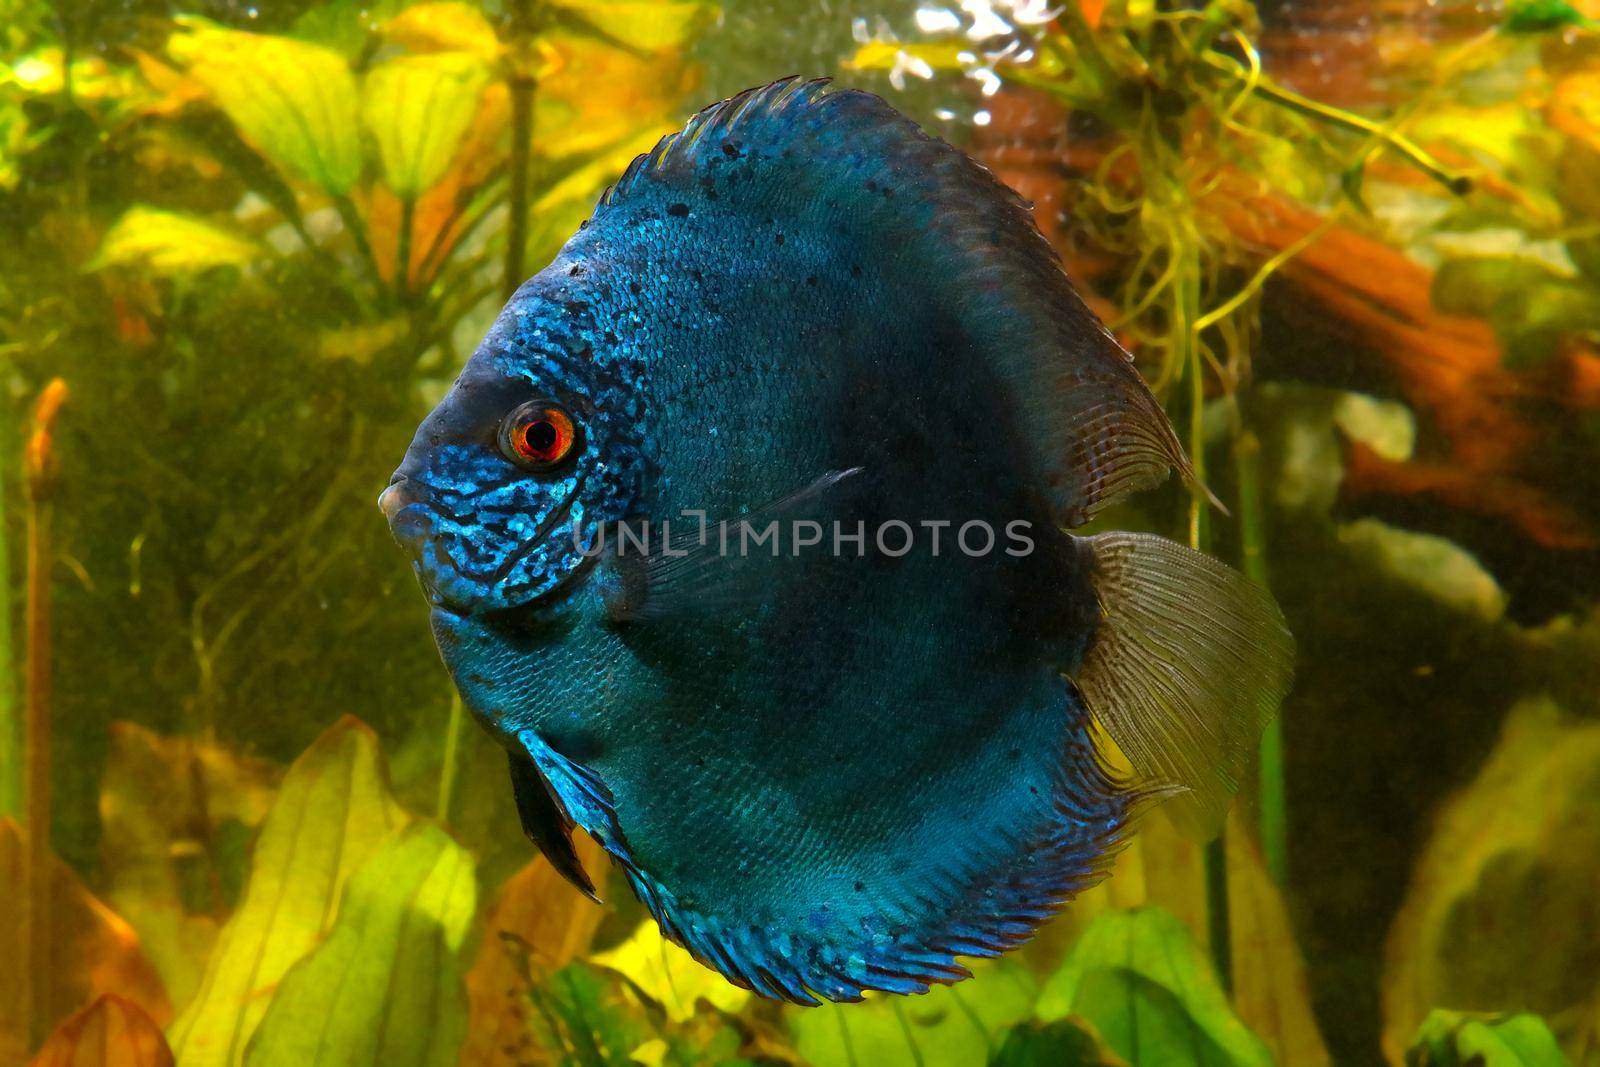 Blue discus fish in the aquarium. Popular as freshwater aquarium fish